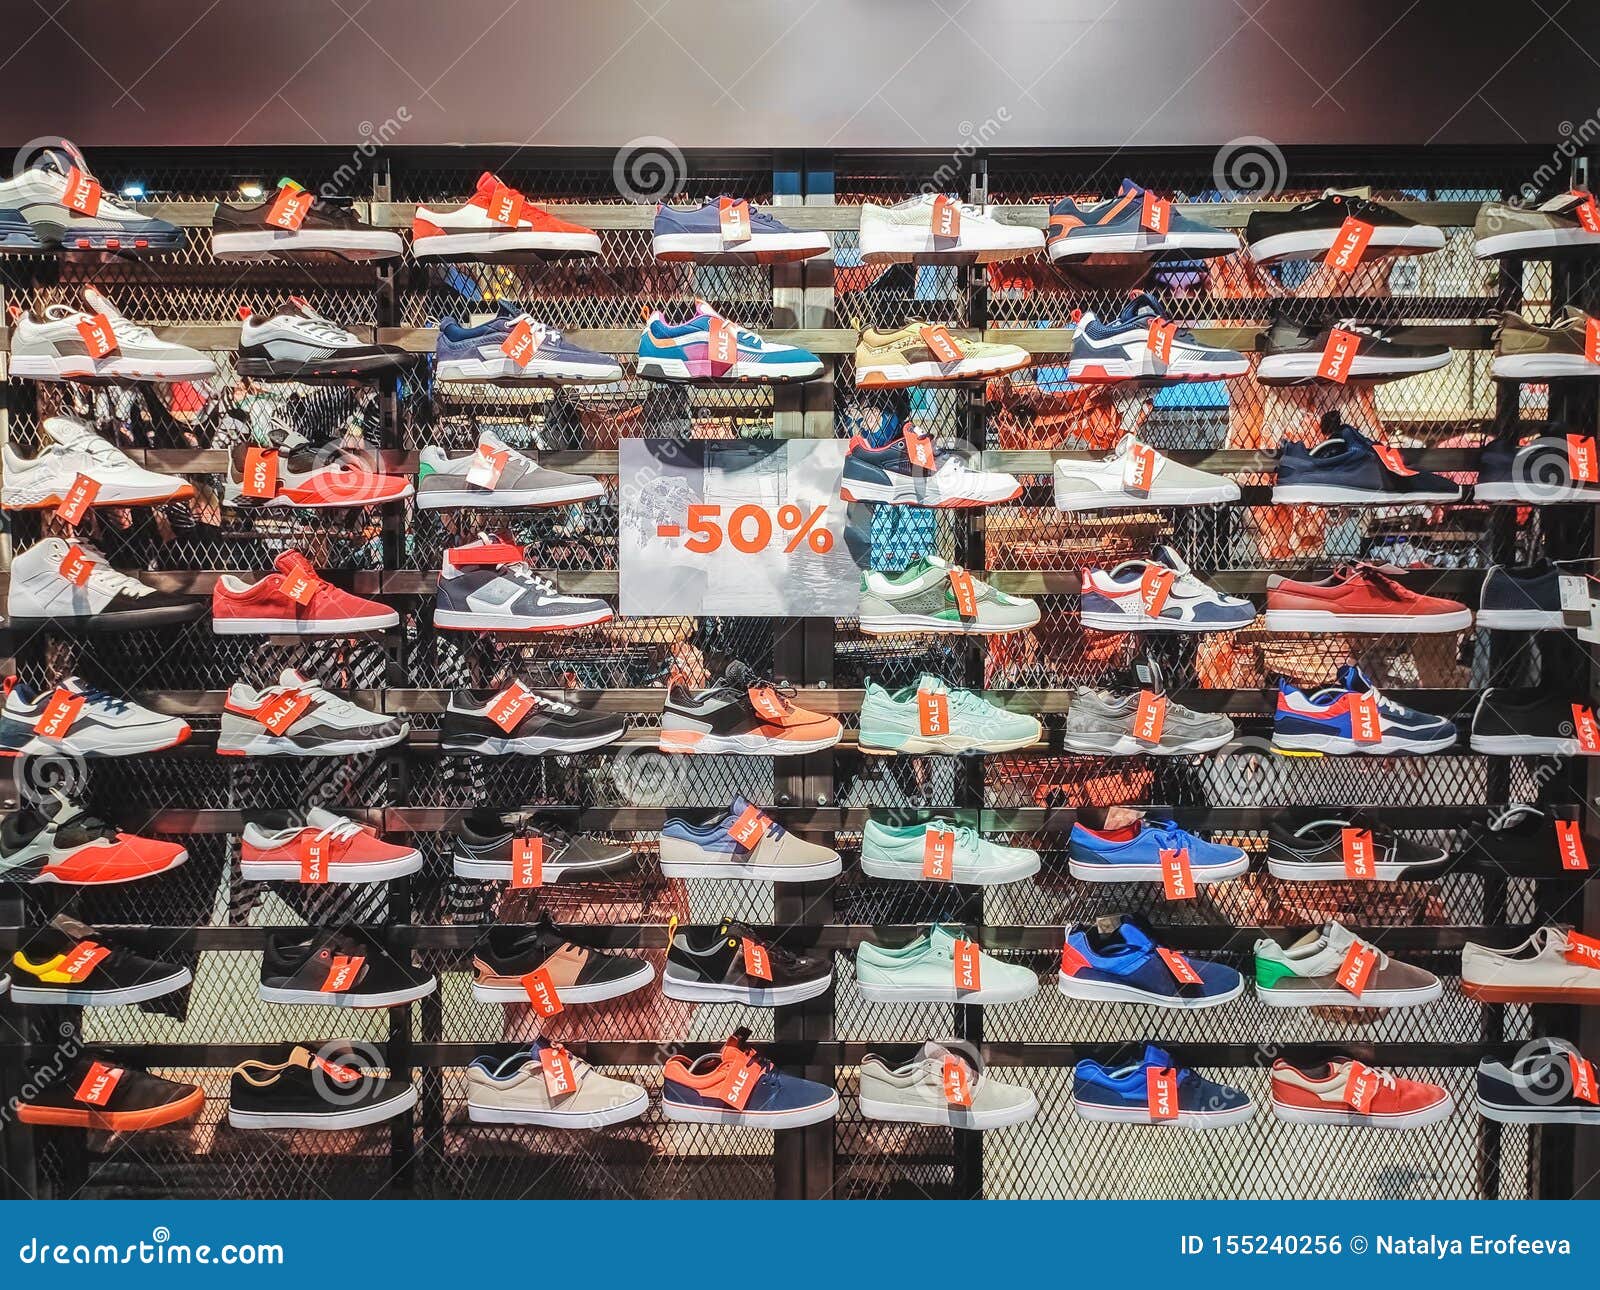 sales on sneakers